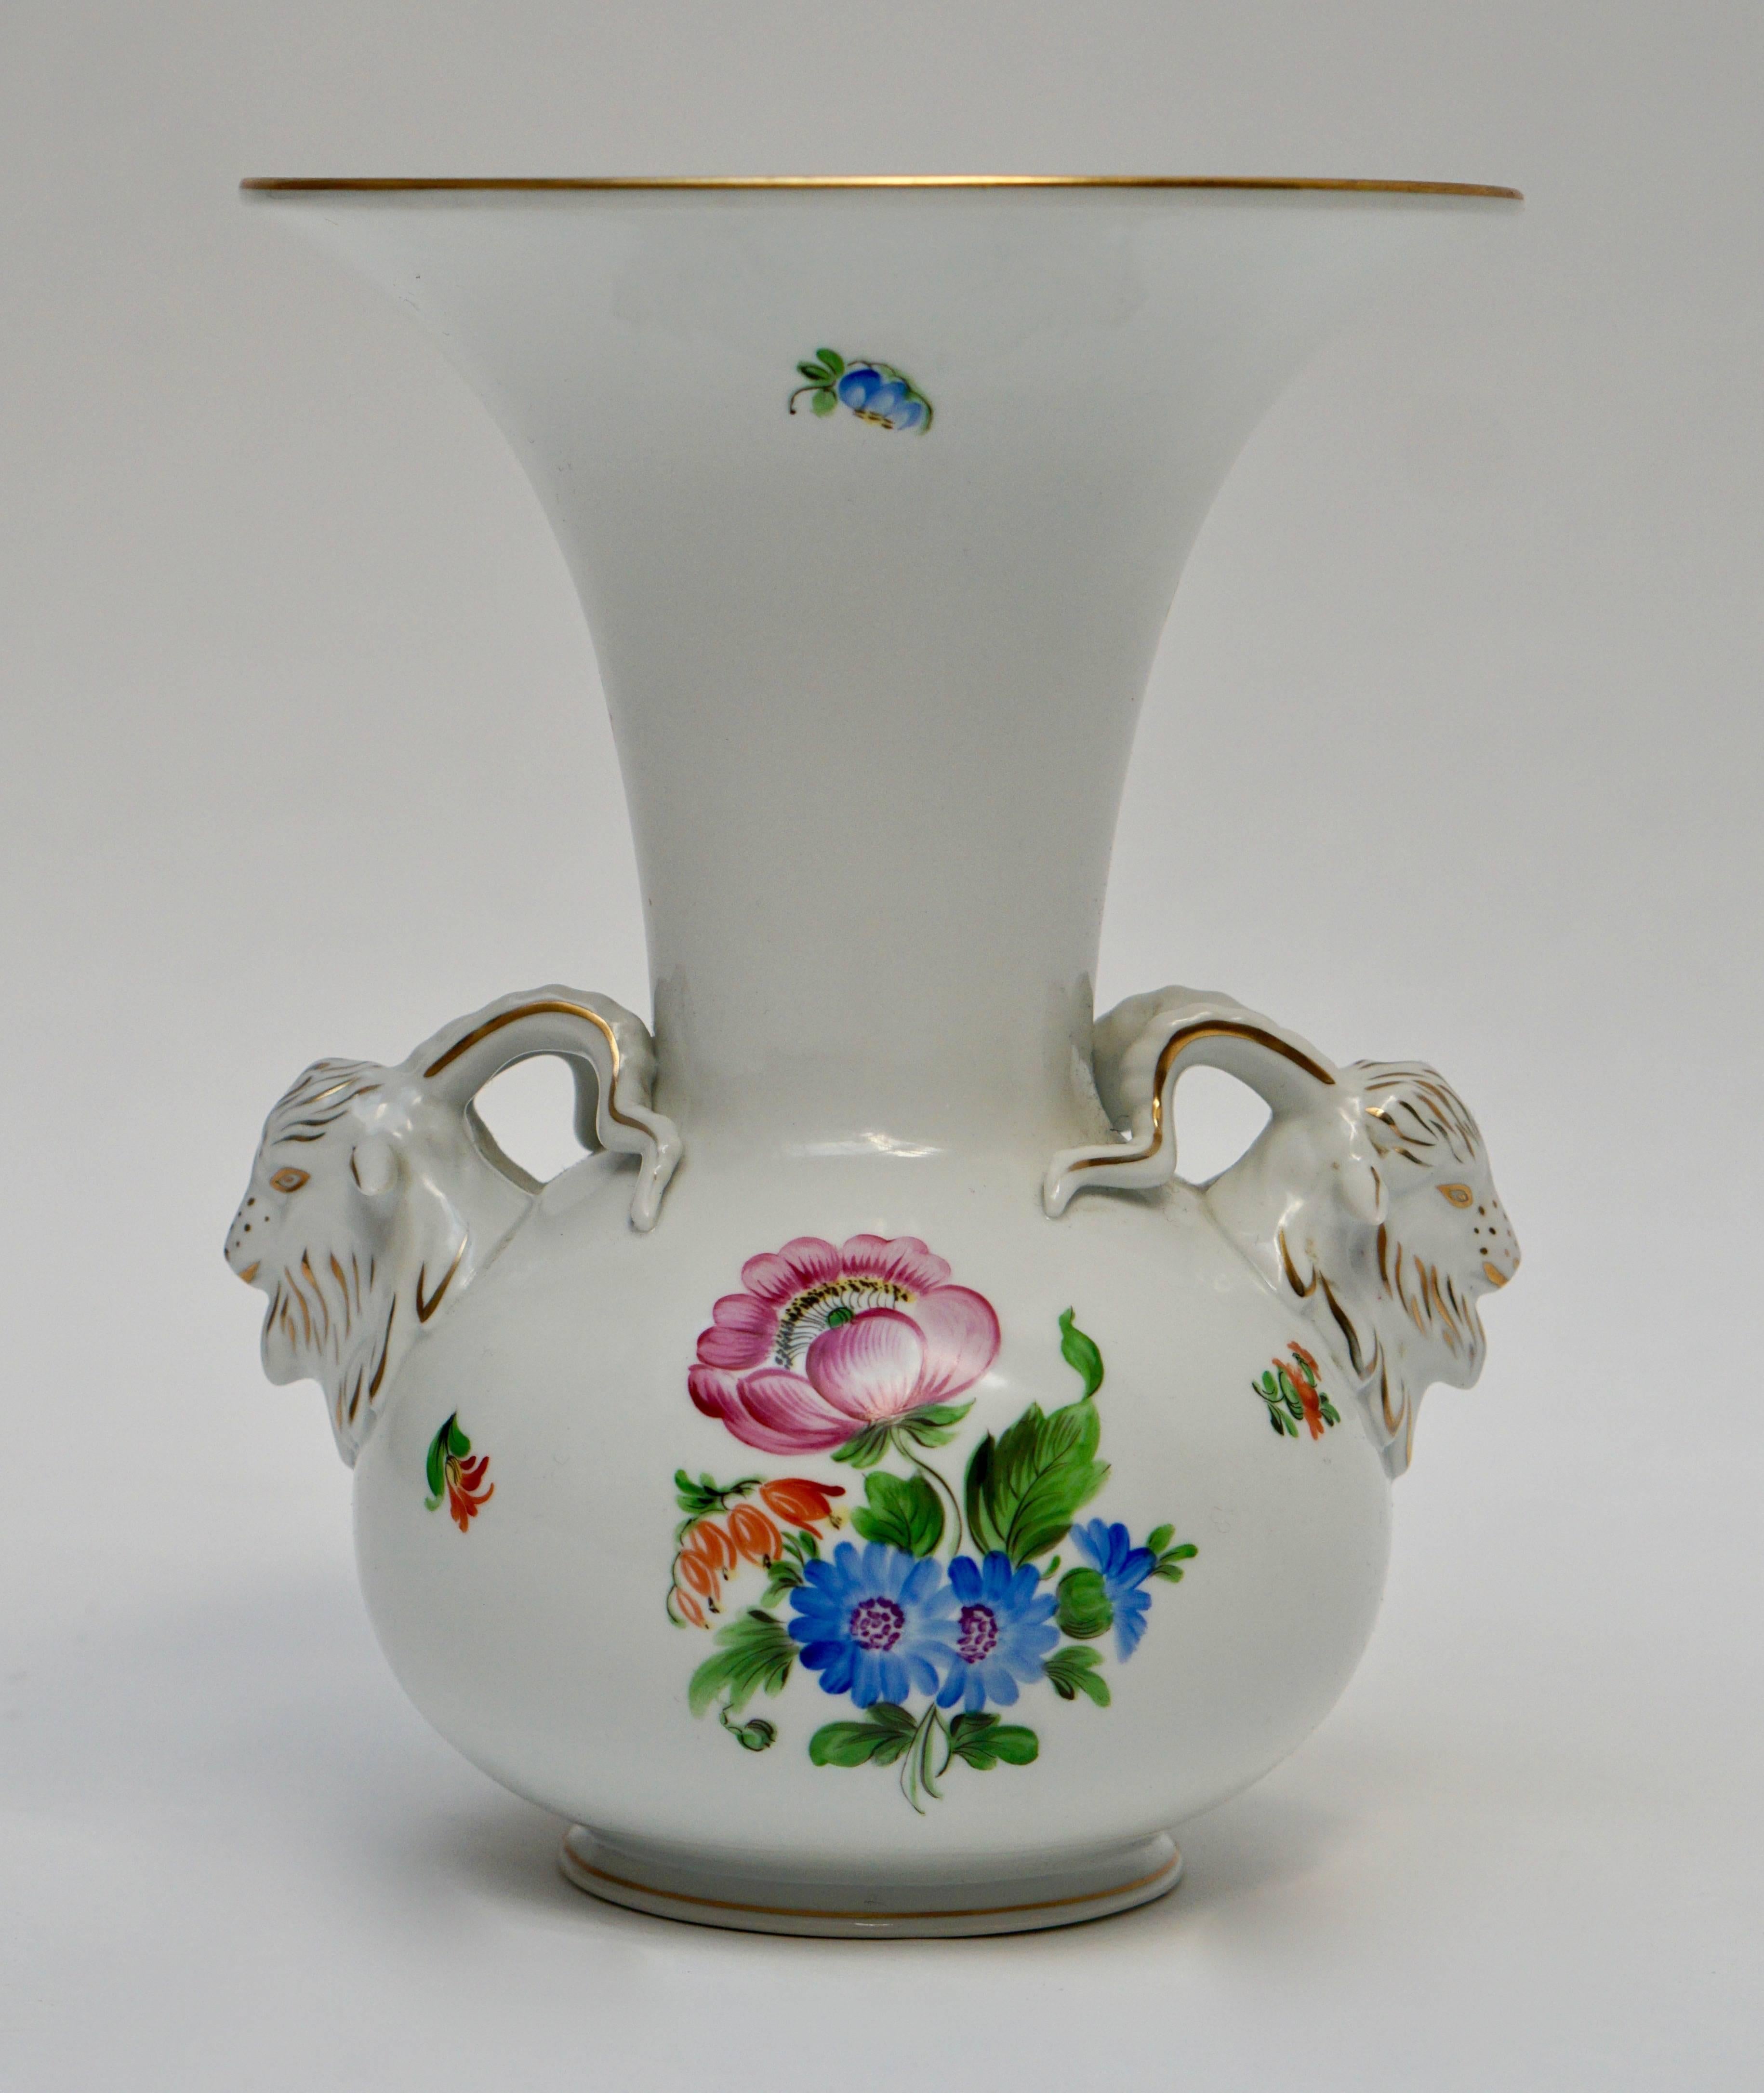 Herend, oiseaux Rothschild, vase, porcelaine, fleur.
Un vase Herend Rothschild Birds en porcelaine avec deux têtes de chèvre.

Marqué sur la face inférieure.
Dimensions : Hauteur 25 cm.
Diamètre 15 cm.